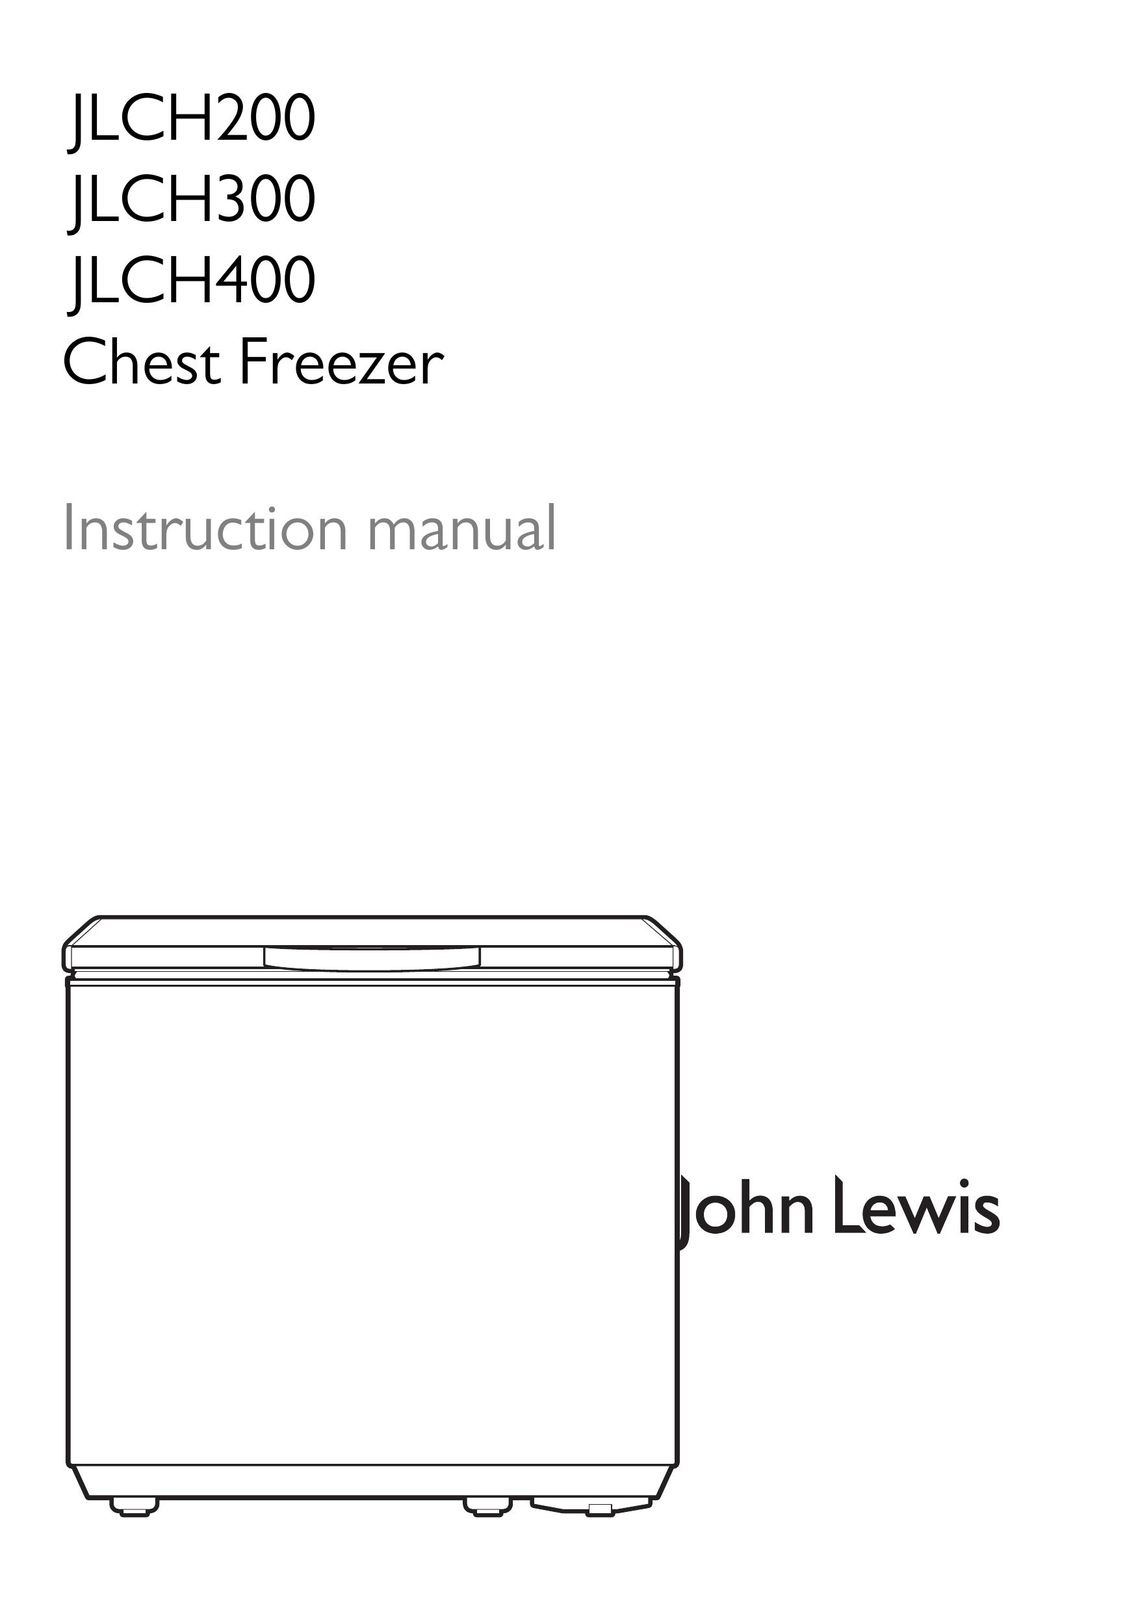 John Lewis JLCH200 Freezer User Manual